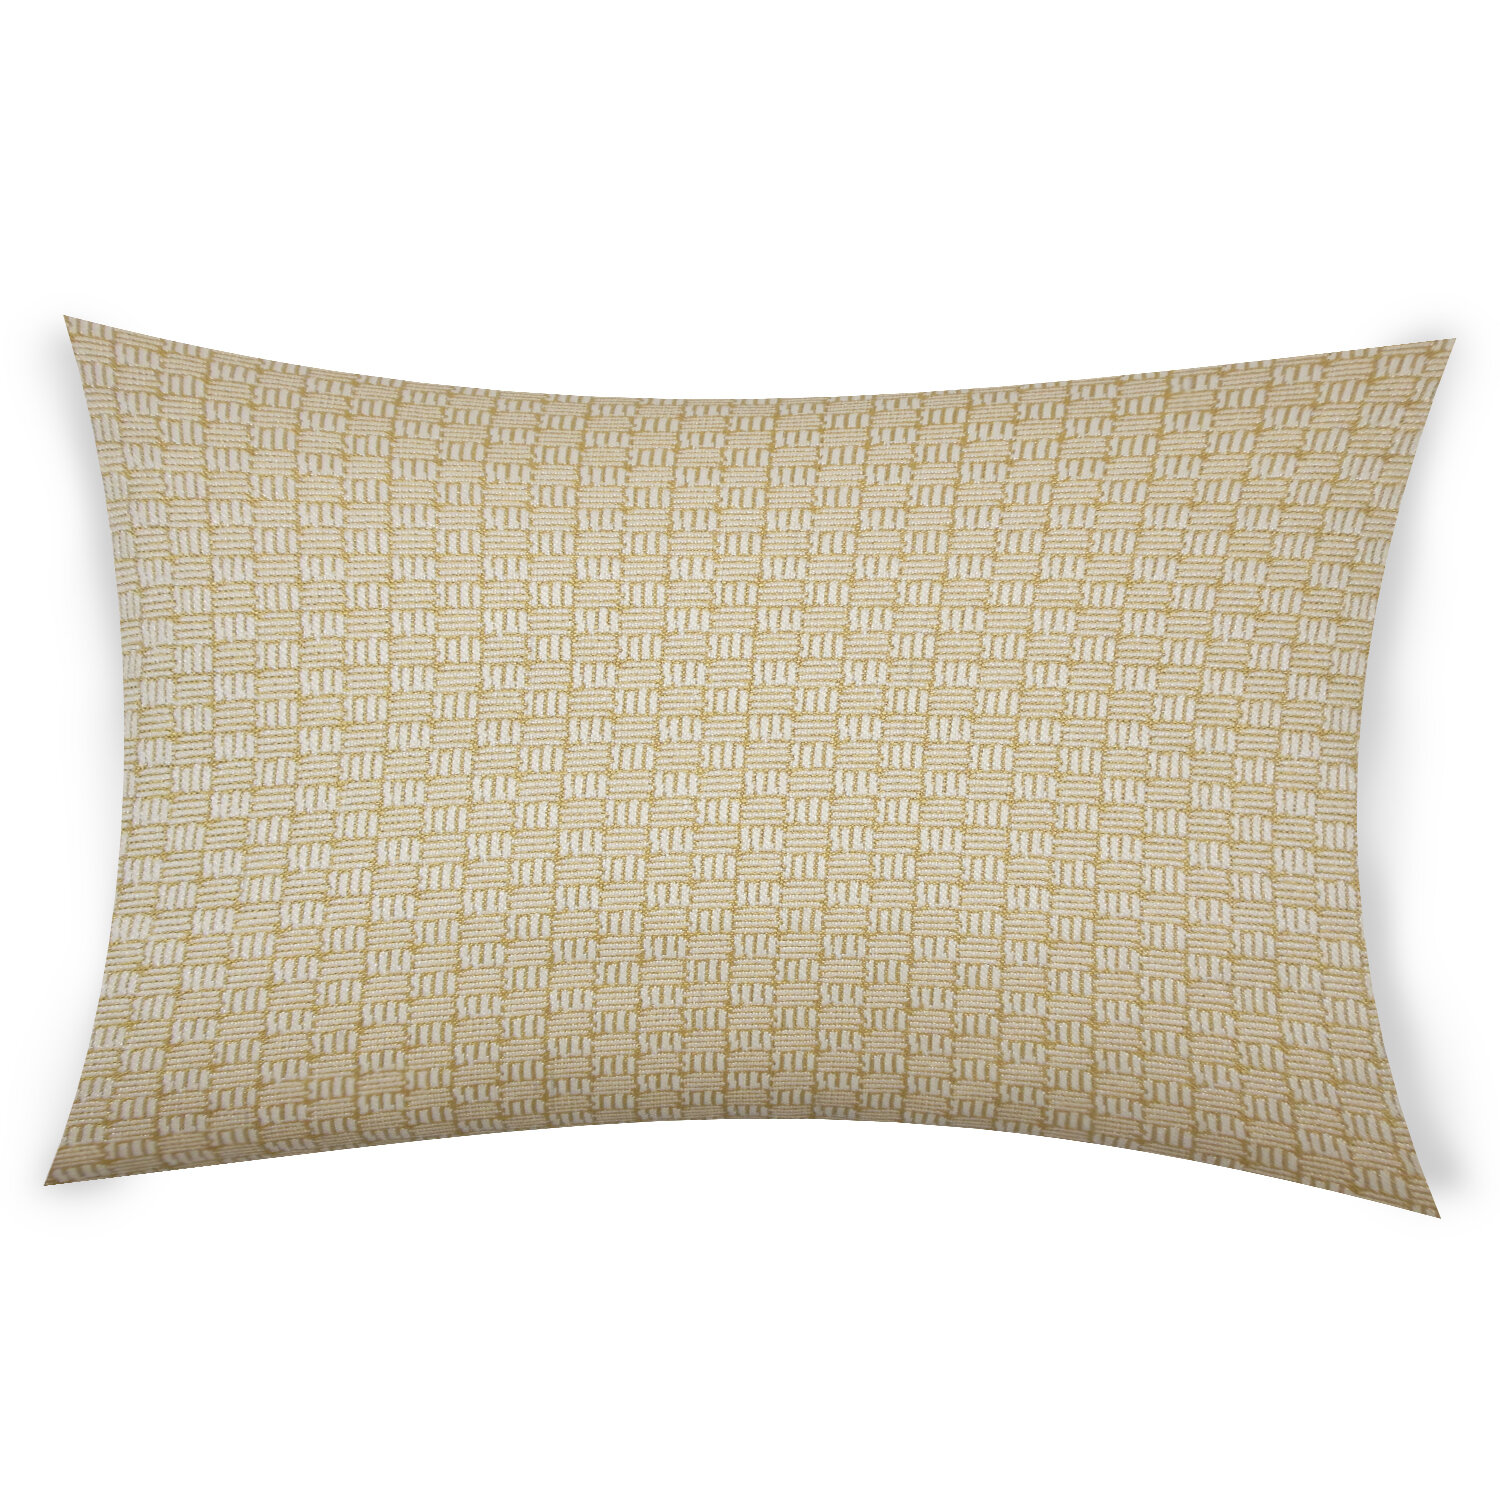 Ebern Designs Ocallaghan Lumbar Pillow Wayfair